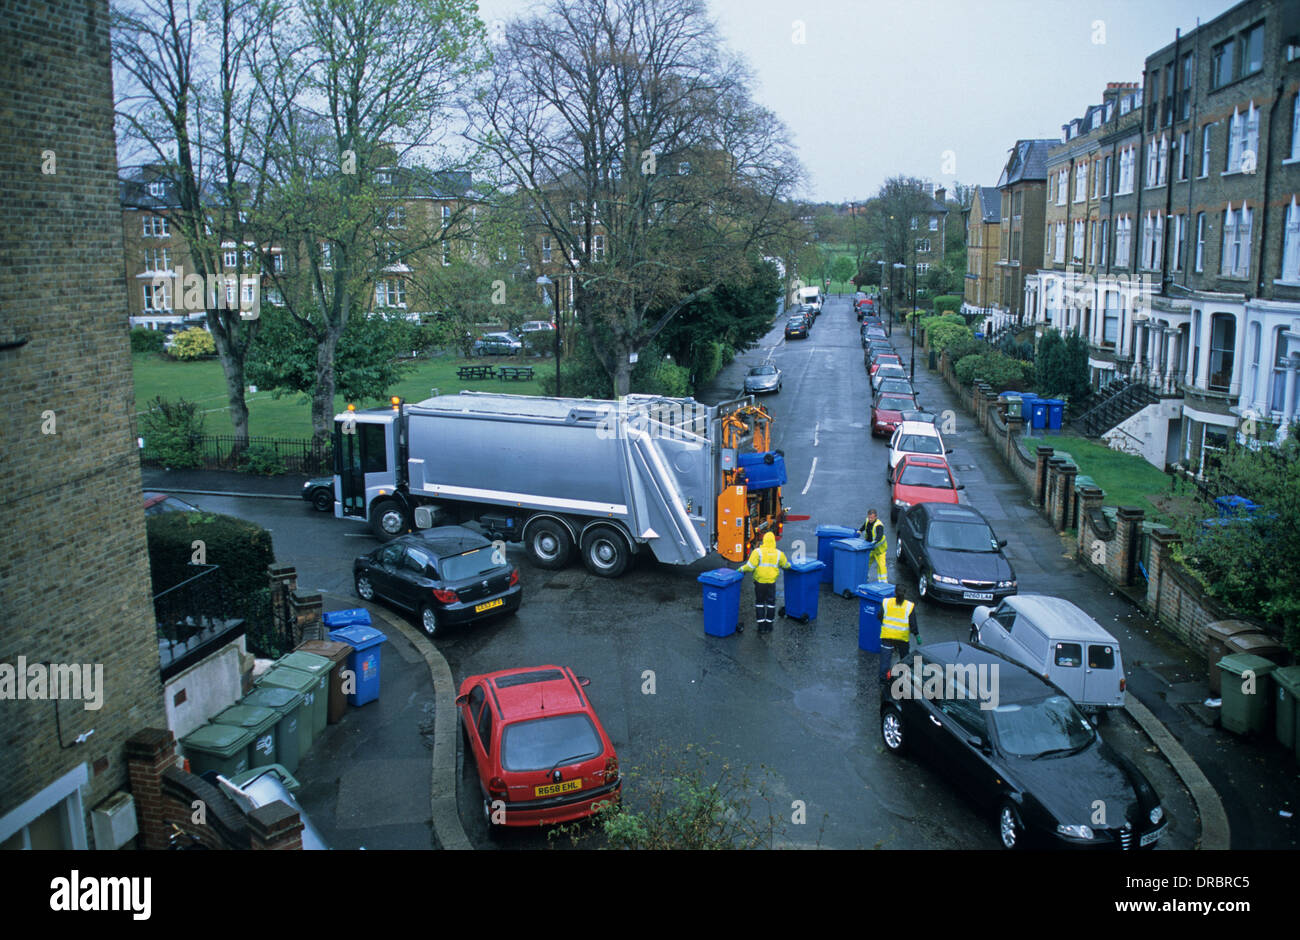 Éboueurs de vider les bacs de recyclage dans une rue de Londres, Angleterre Banque D'Images